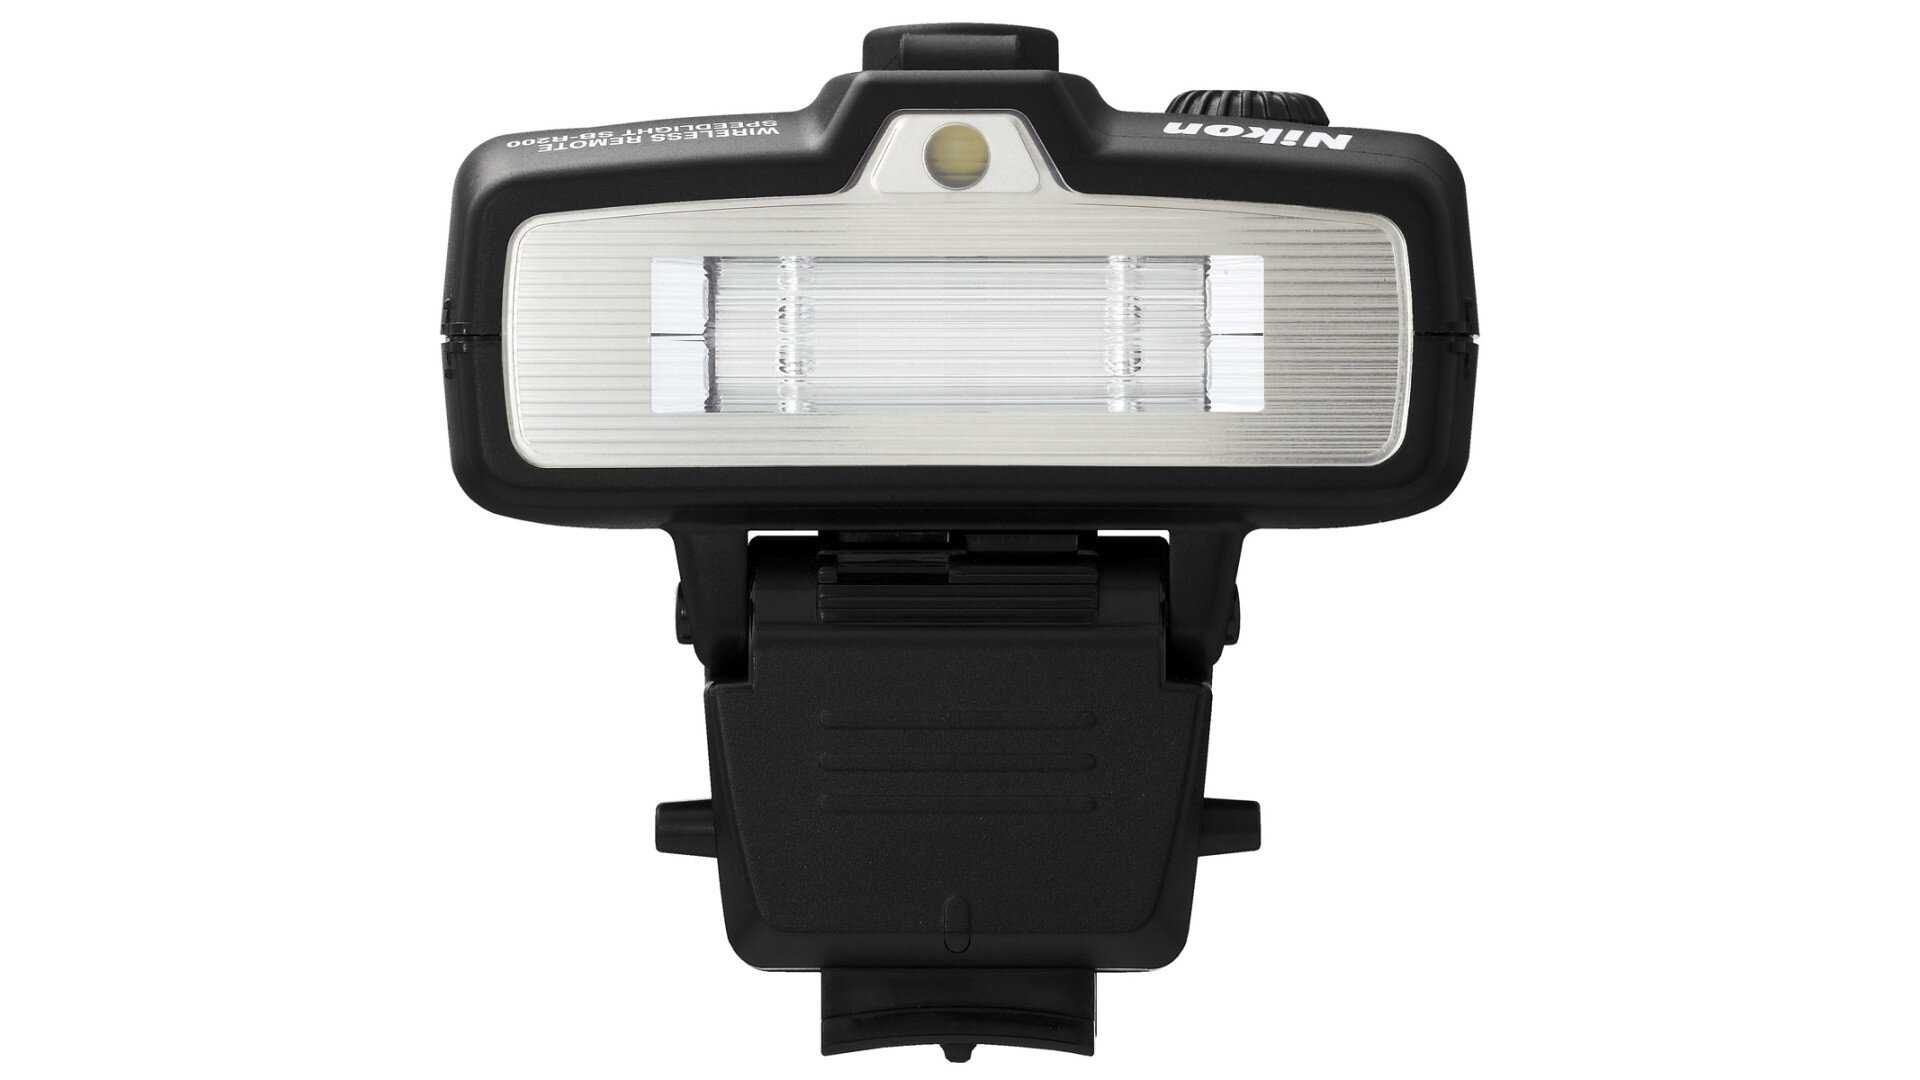 Nikon speedlight commander kit r1c1 купить по акционной цене , отзывы и обзоры.